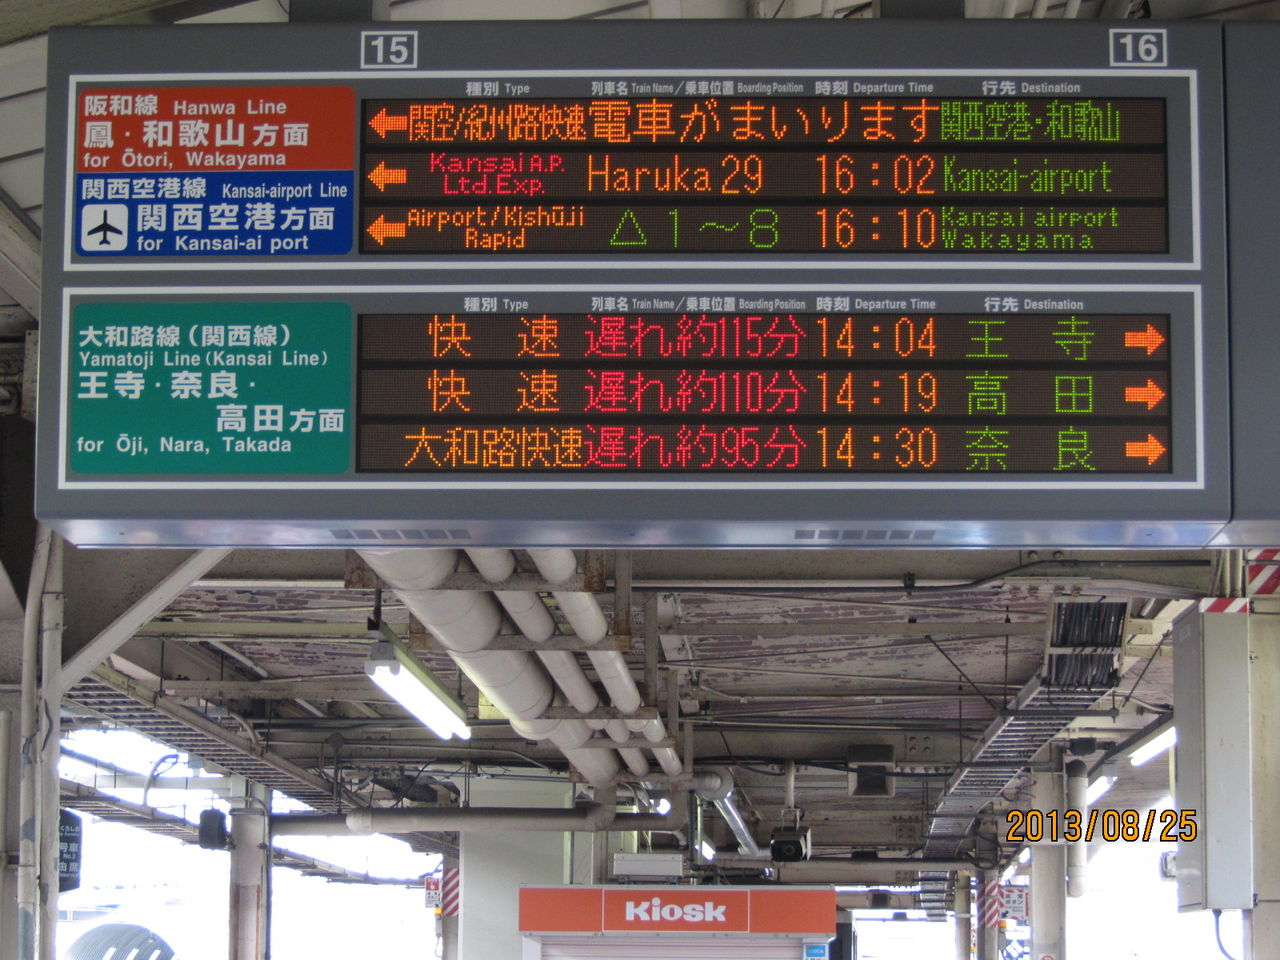 珍事 天王寺駅の発車標に 大和路快速 京都行き が出現 大雨で大幅遅延 2013年8月 関西のjrへようこそ